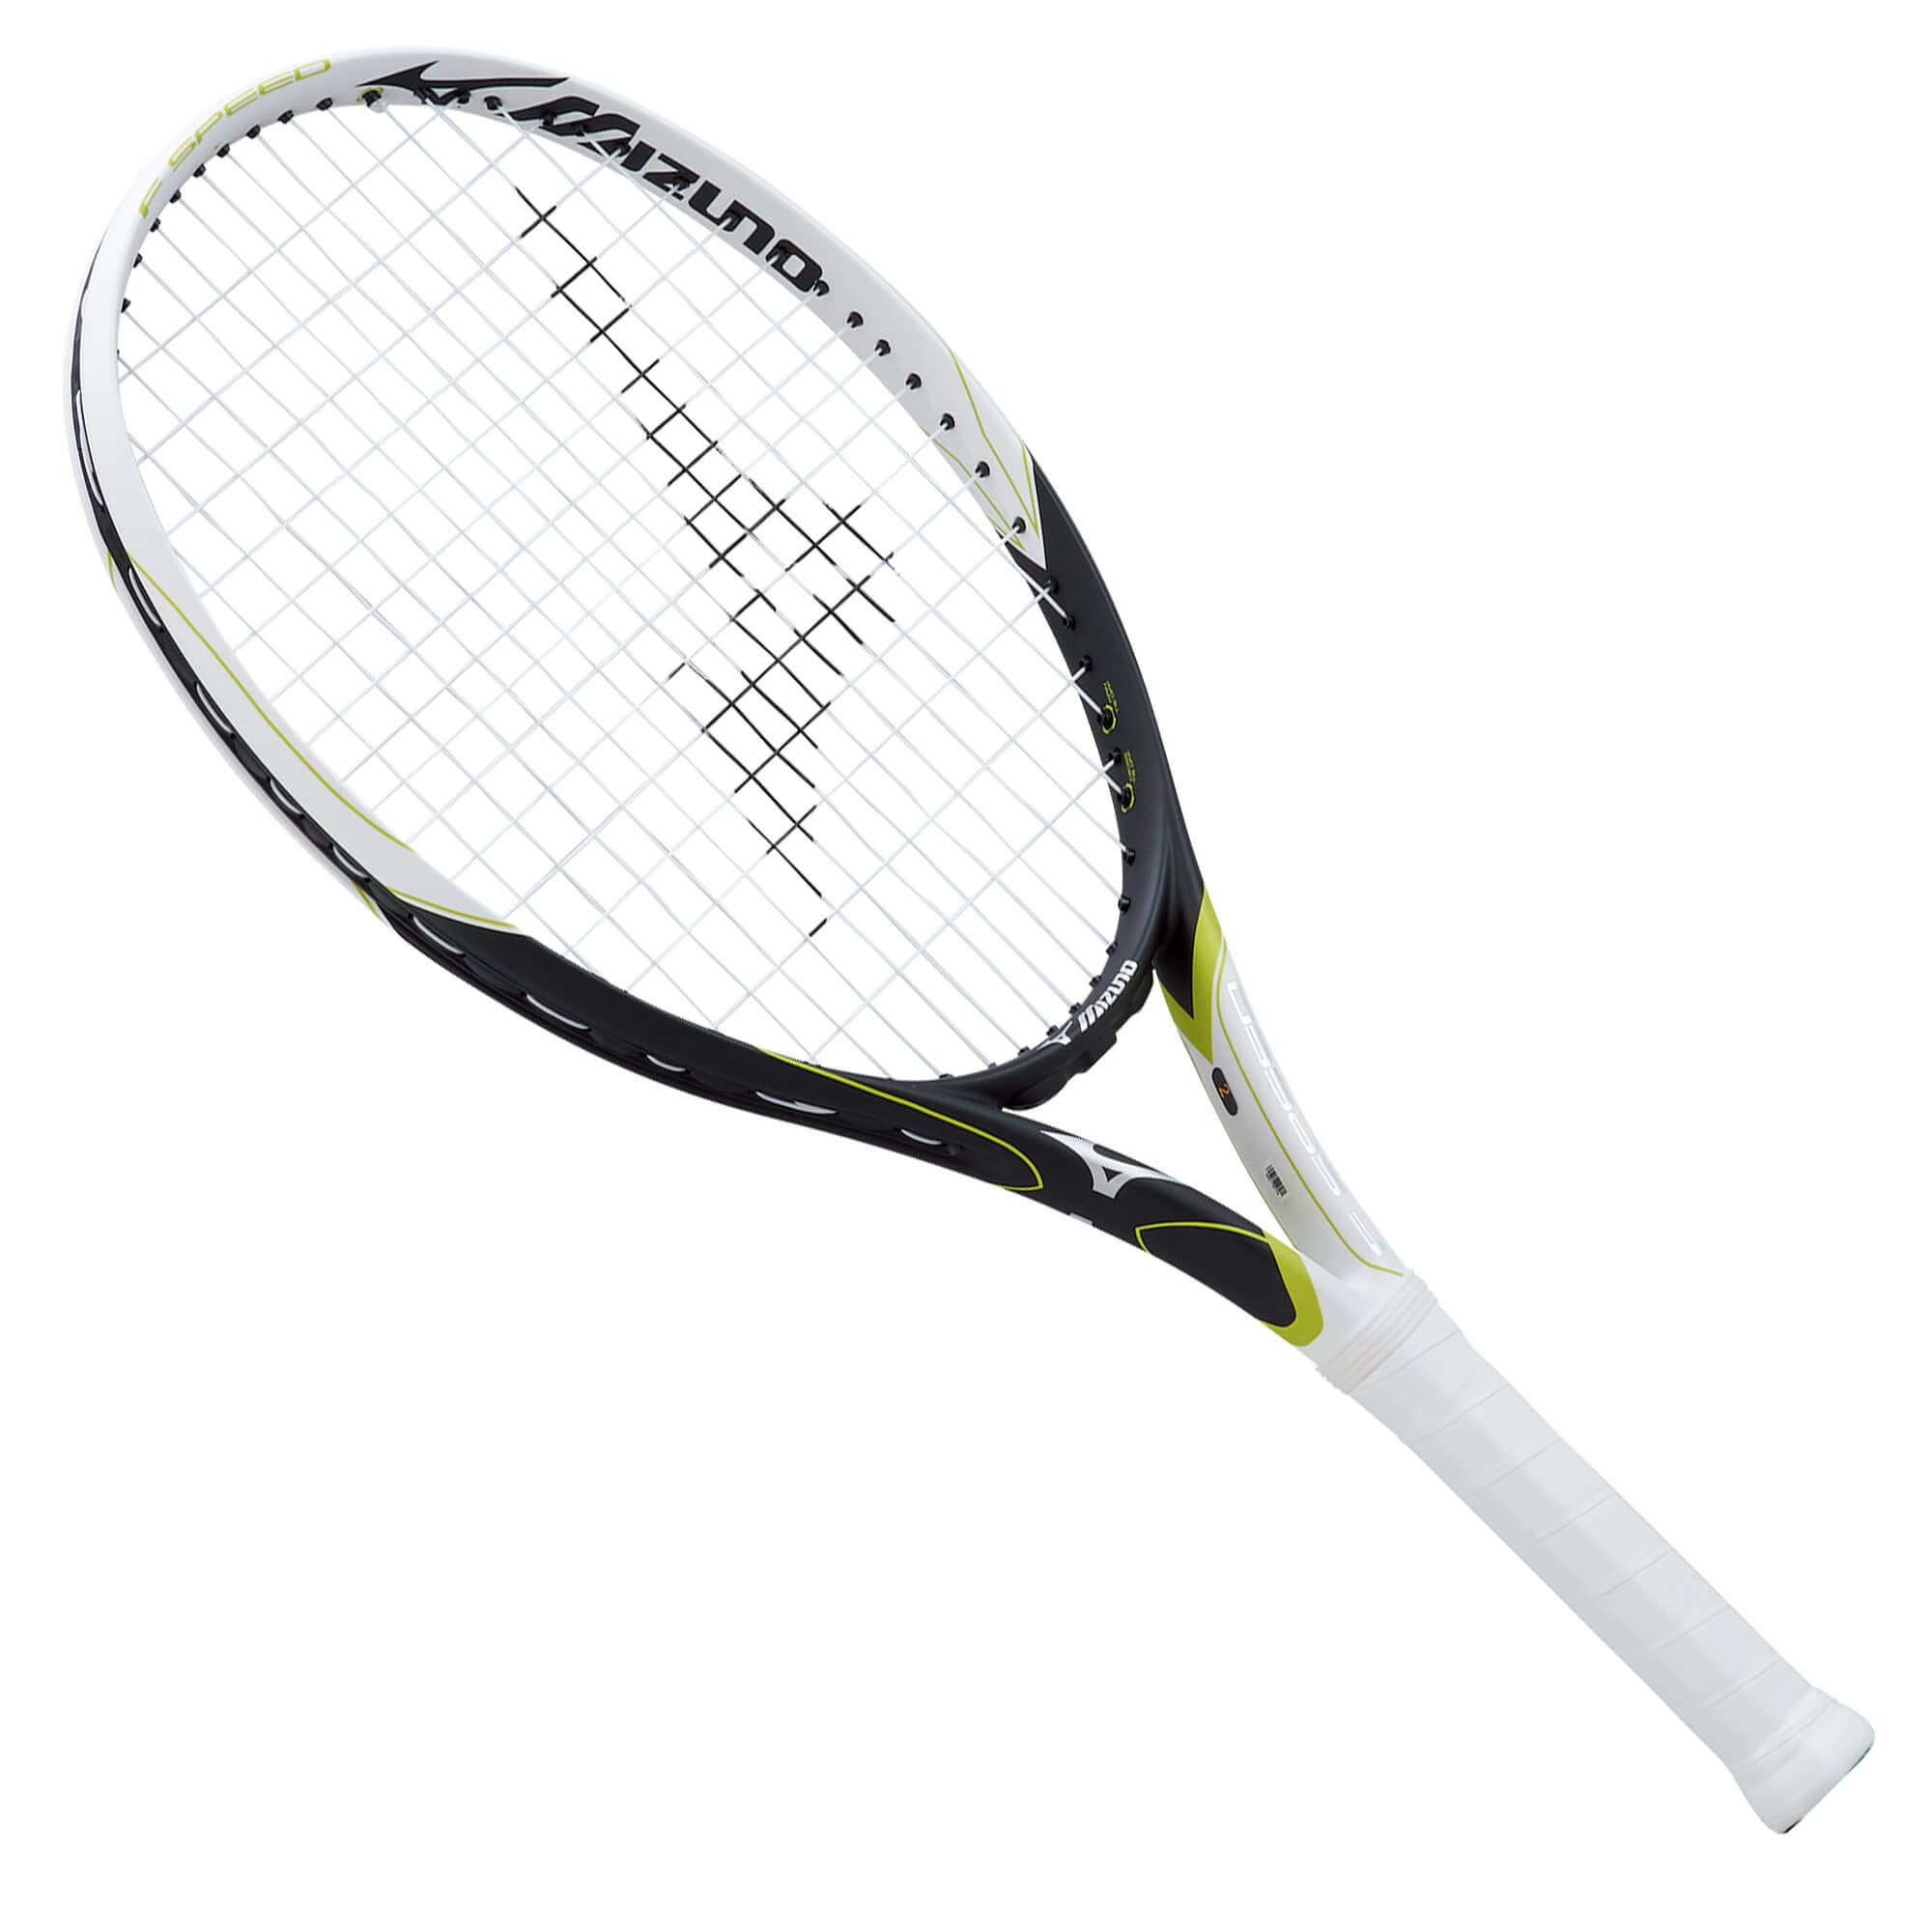 エフスピード(テニス)|63JTH174|ラケット|テニス|ミズノ公式オンライン